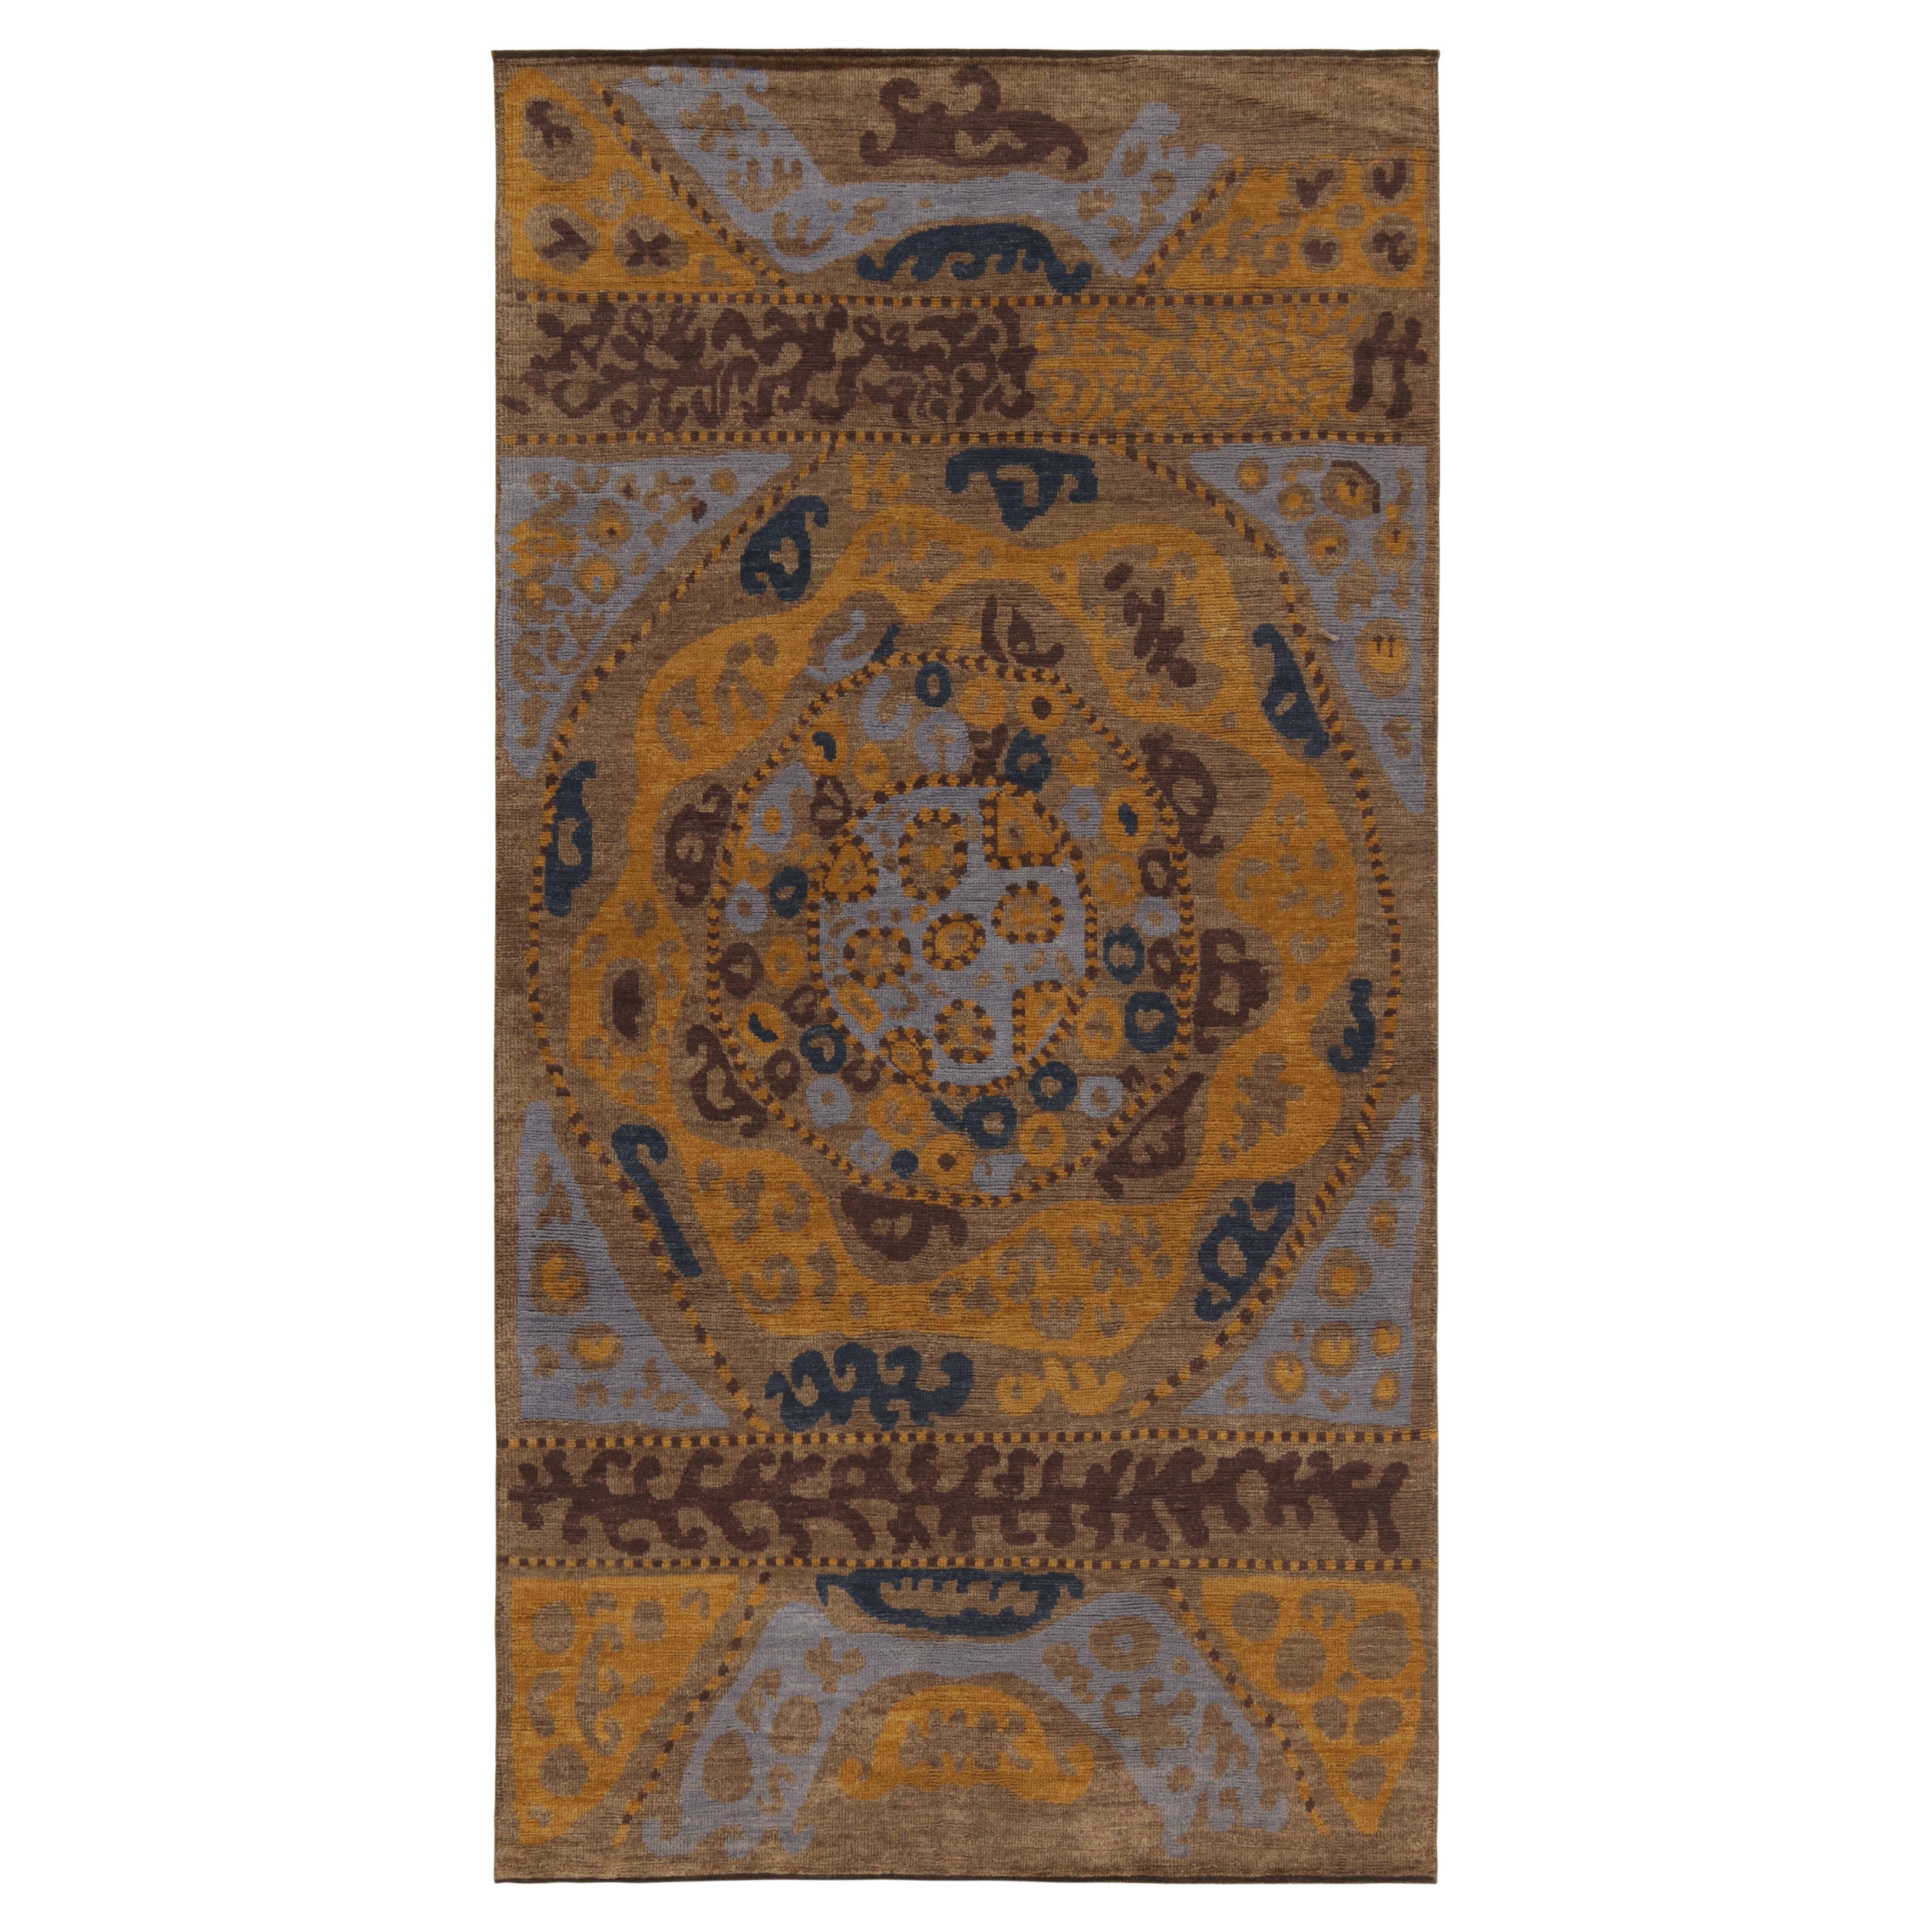 Tapis & Kilims - Tapis de style tribal en motifs beige-marron, or et bleu